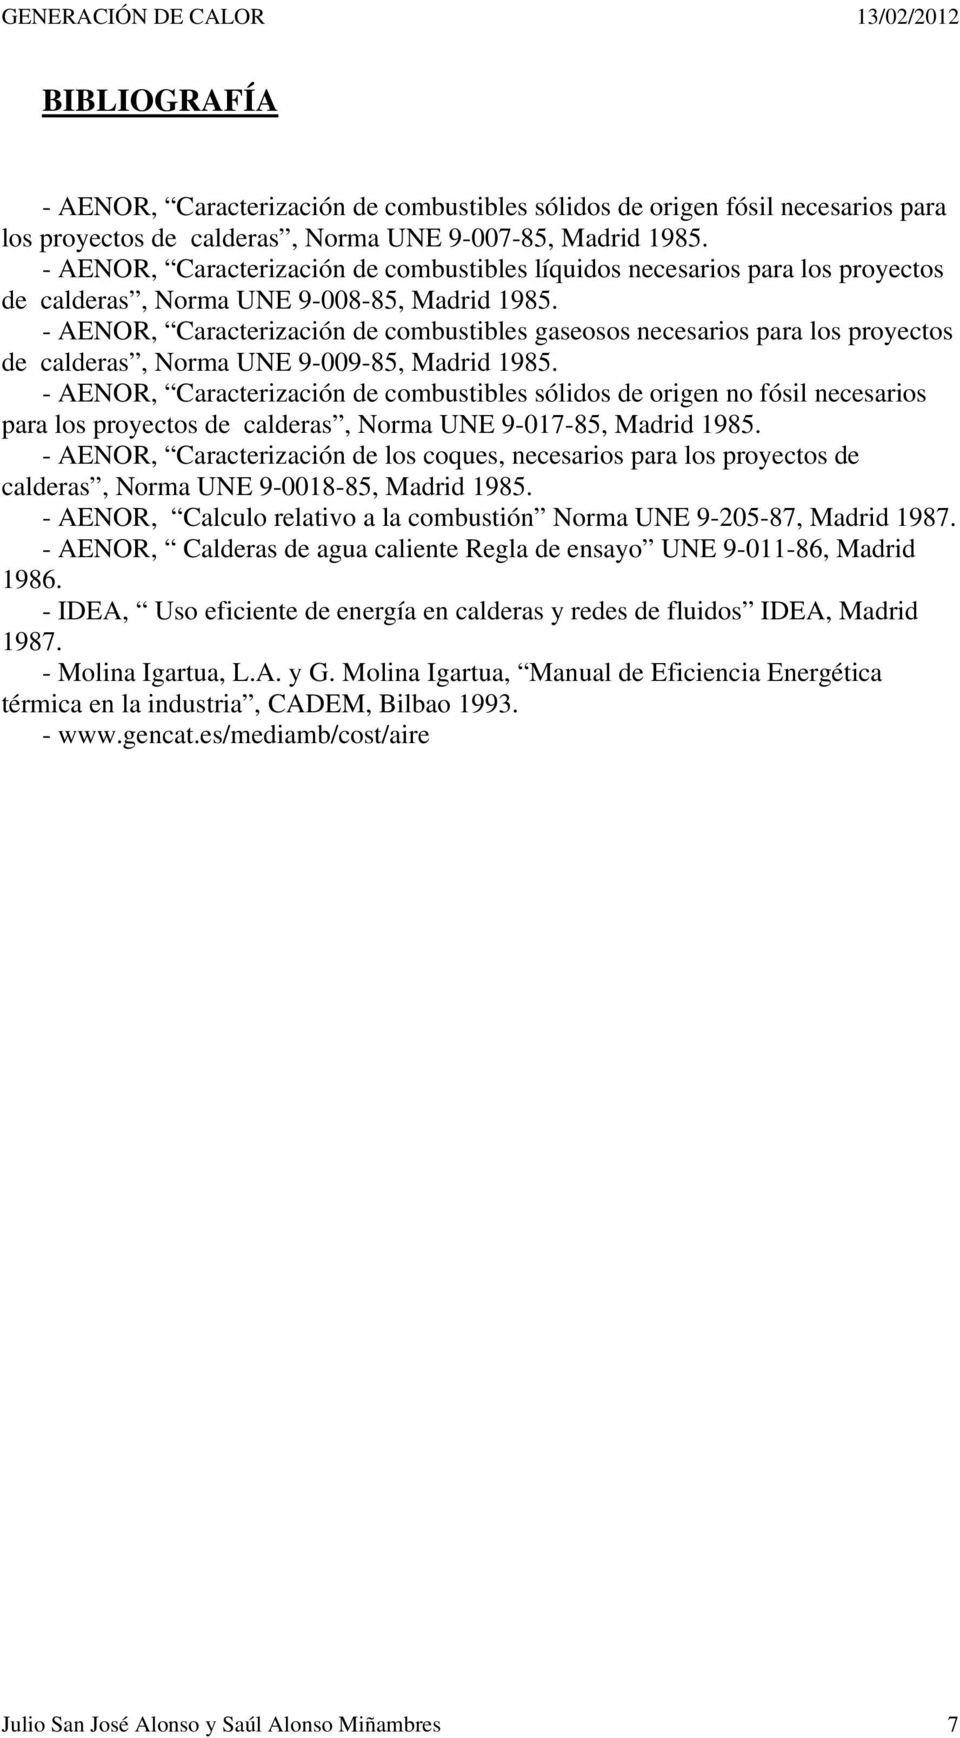 - AENOR, Caracterización de combustibles gaseosos necesarios para los proyectos de calderas, Norma UNE 9-009-85, Madrid 1985.